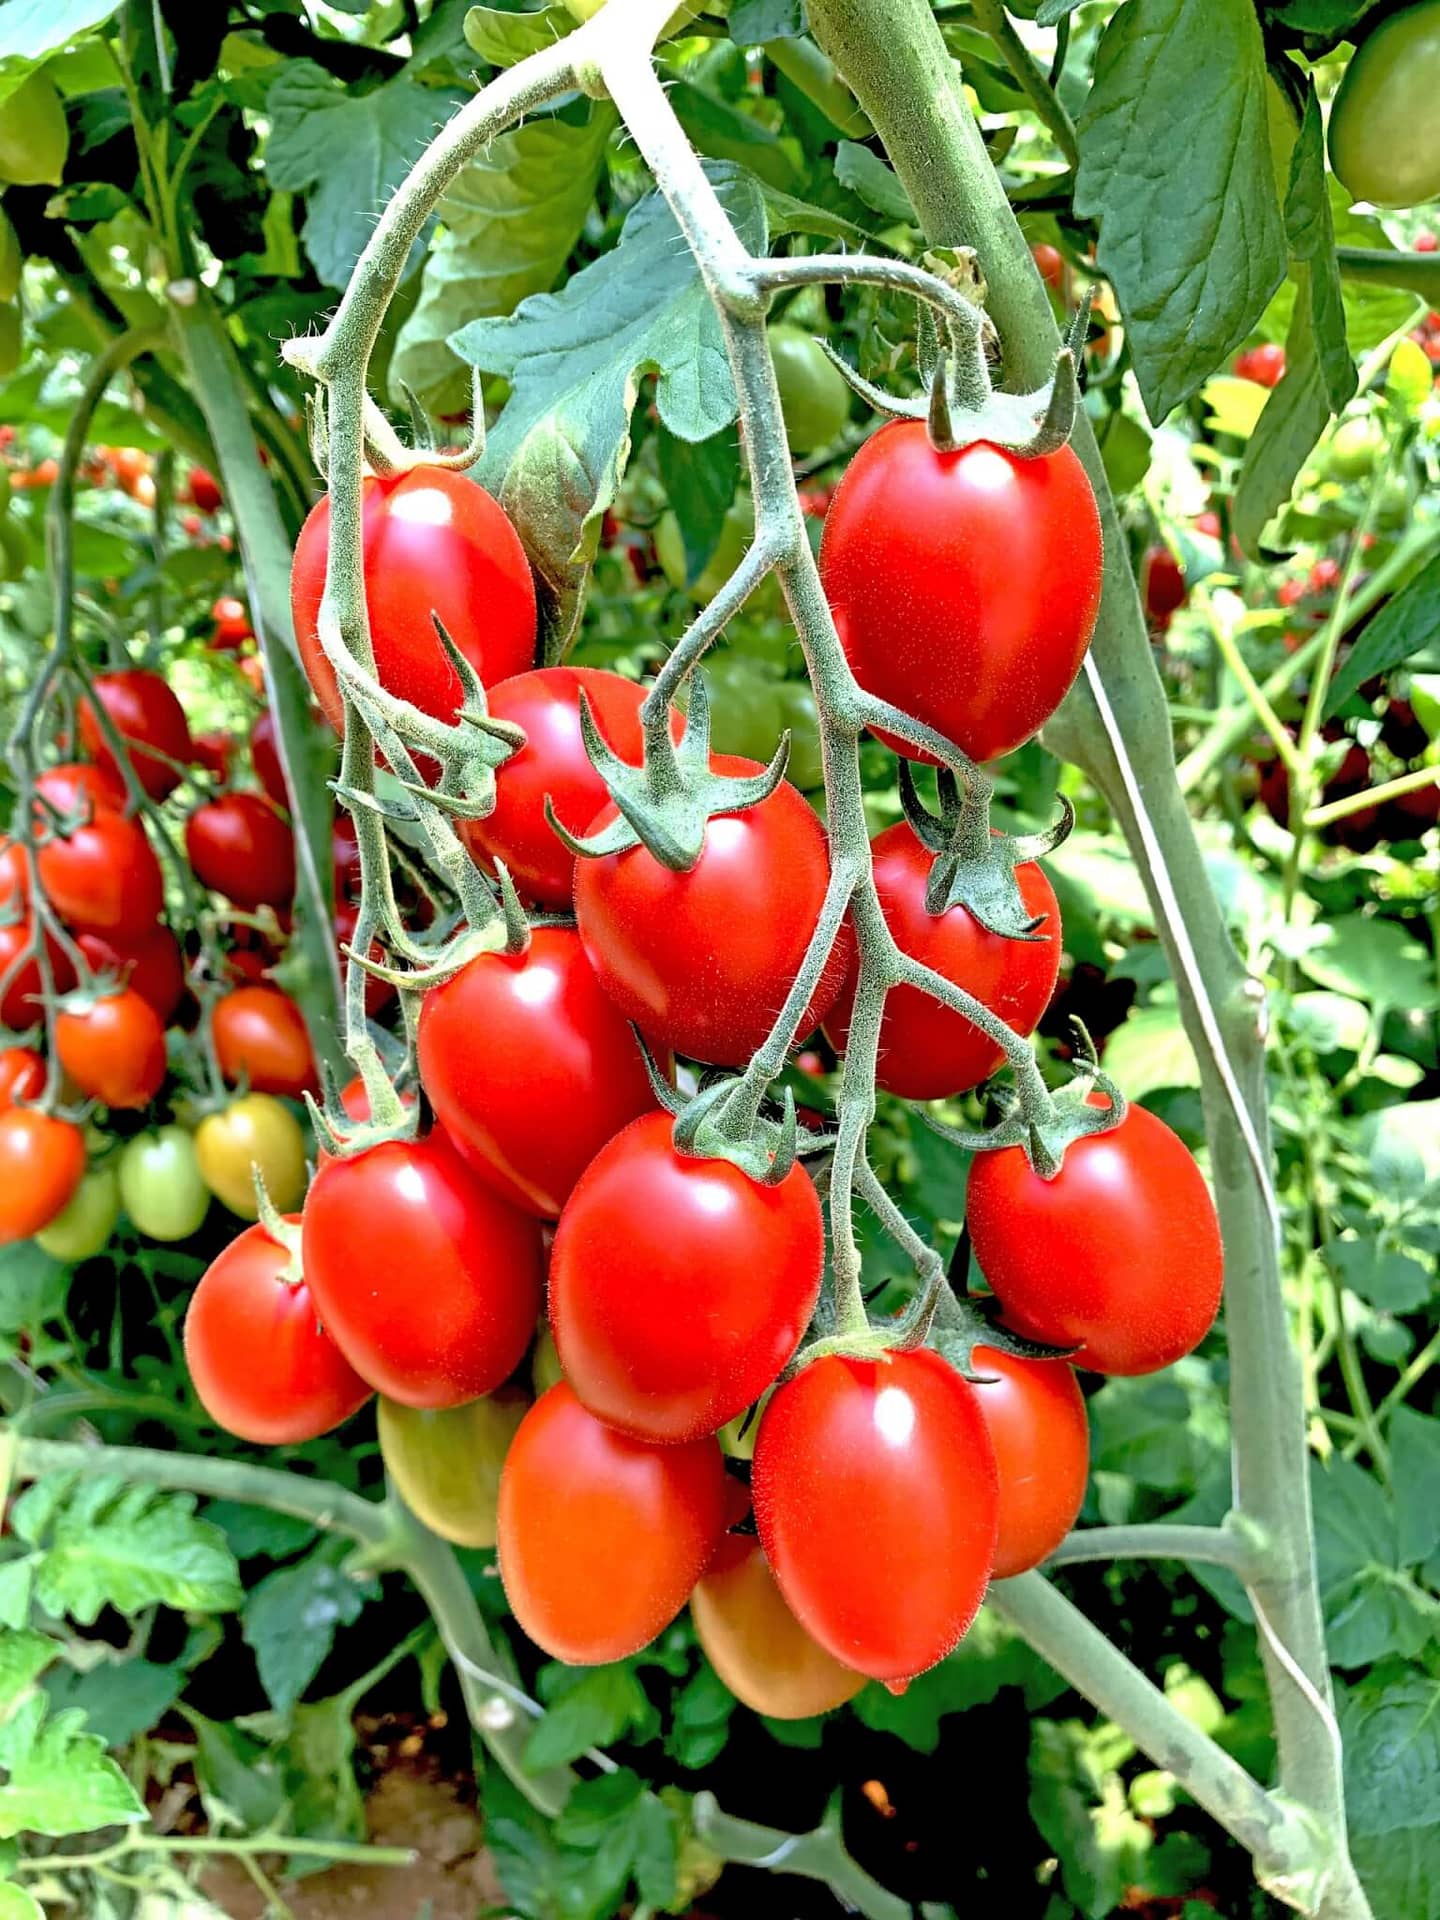 Biogard - ISONET® T – Control de Tuta absoluta en tomate mediante la Confusión sexual